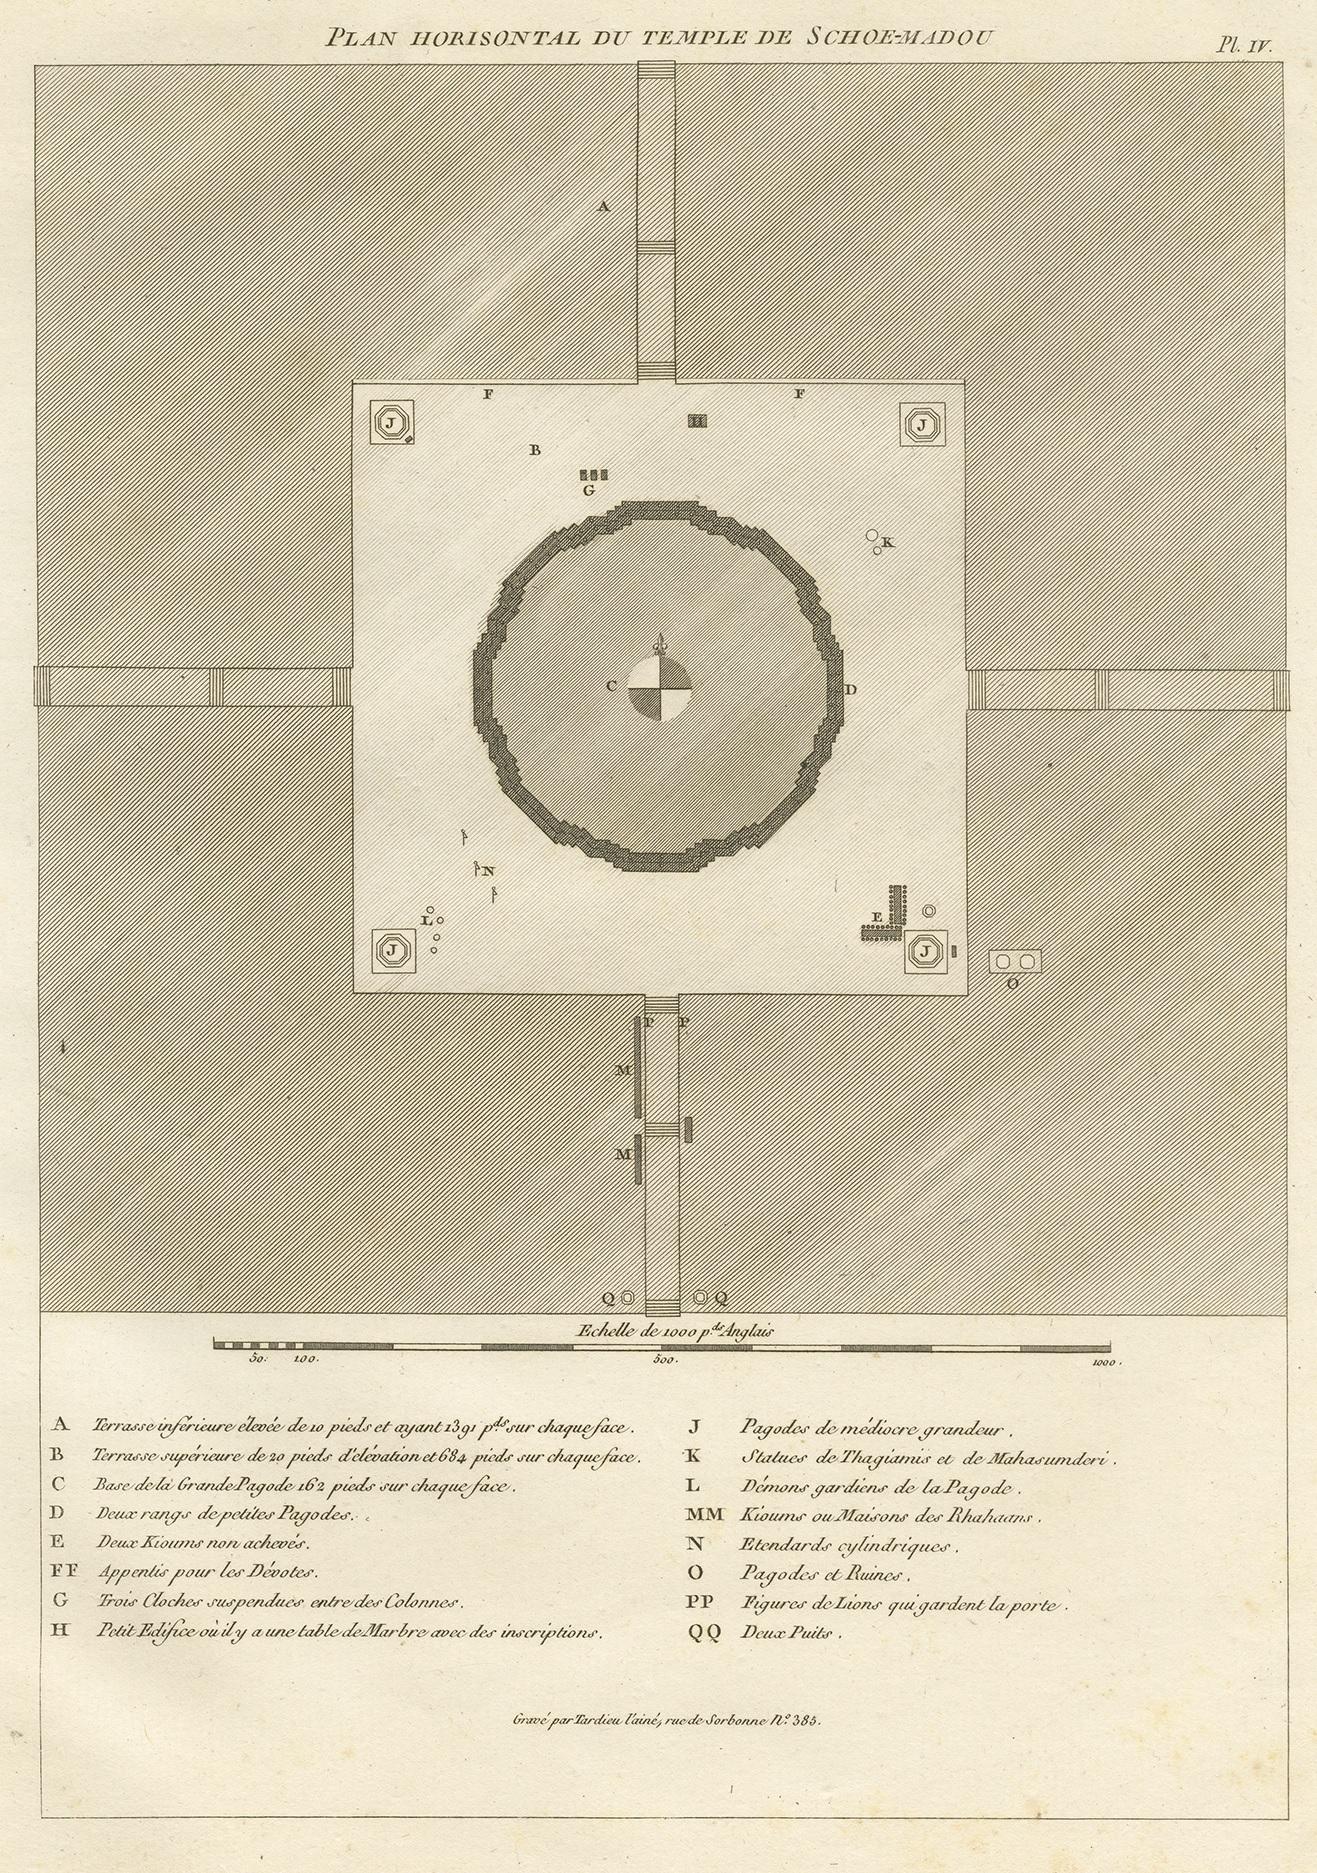 Antique print titled 'Plan Horisontal du Temple de Schoe-Madou'. Plan of a Burmese temple. This print originates from 'Relation de l'Ambassade Anglaise, envoyée en 1795 dans le Royaume d'Ava, ou l'Empire des Birmans' by M. Symes. Published 1800.